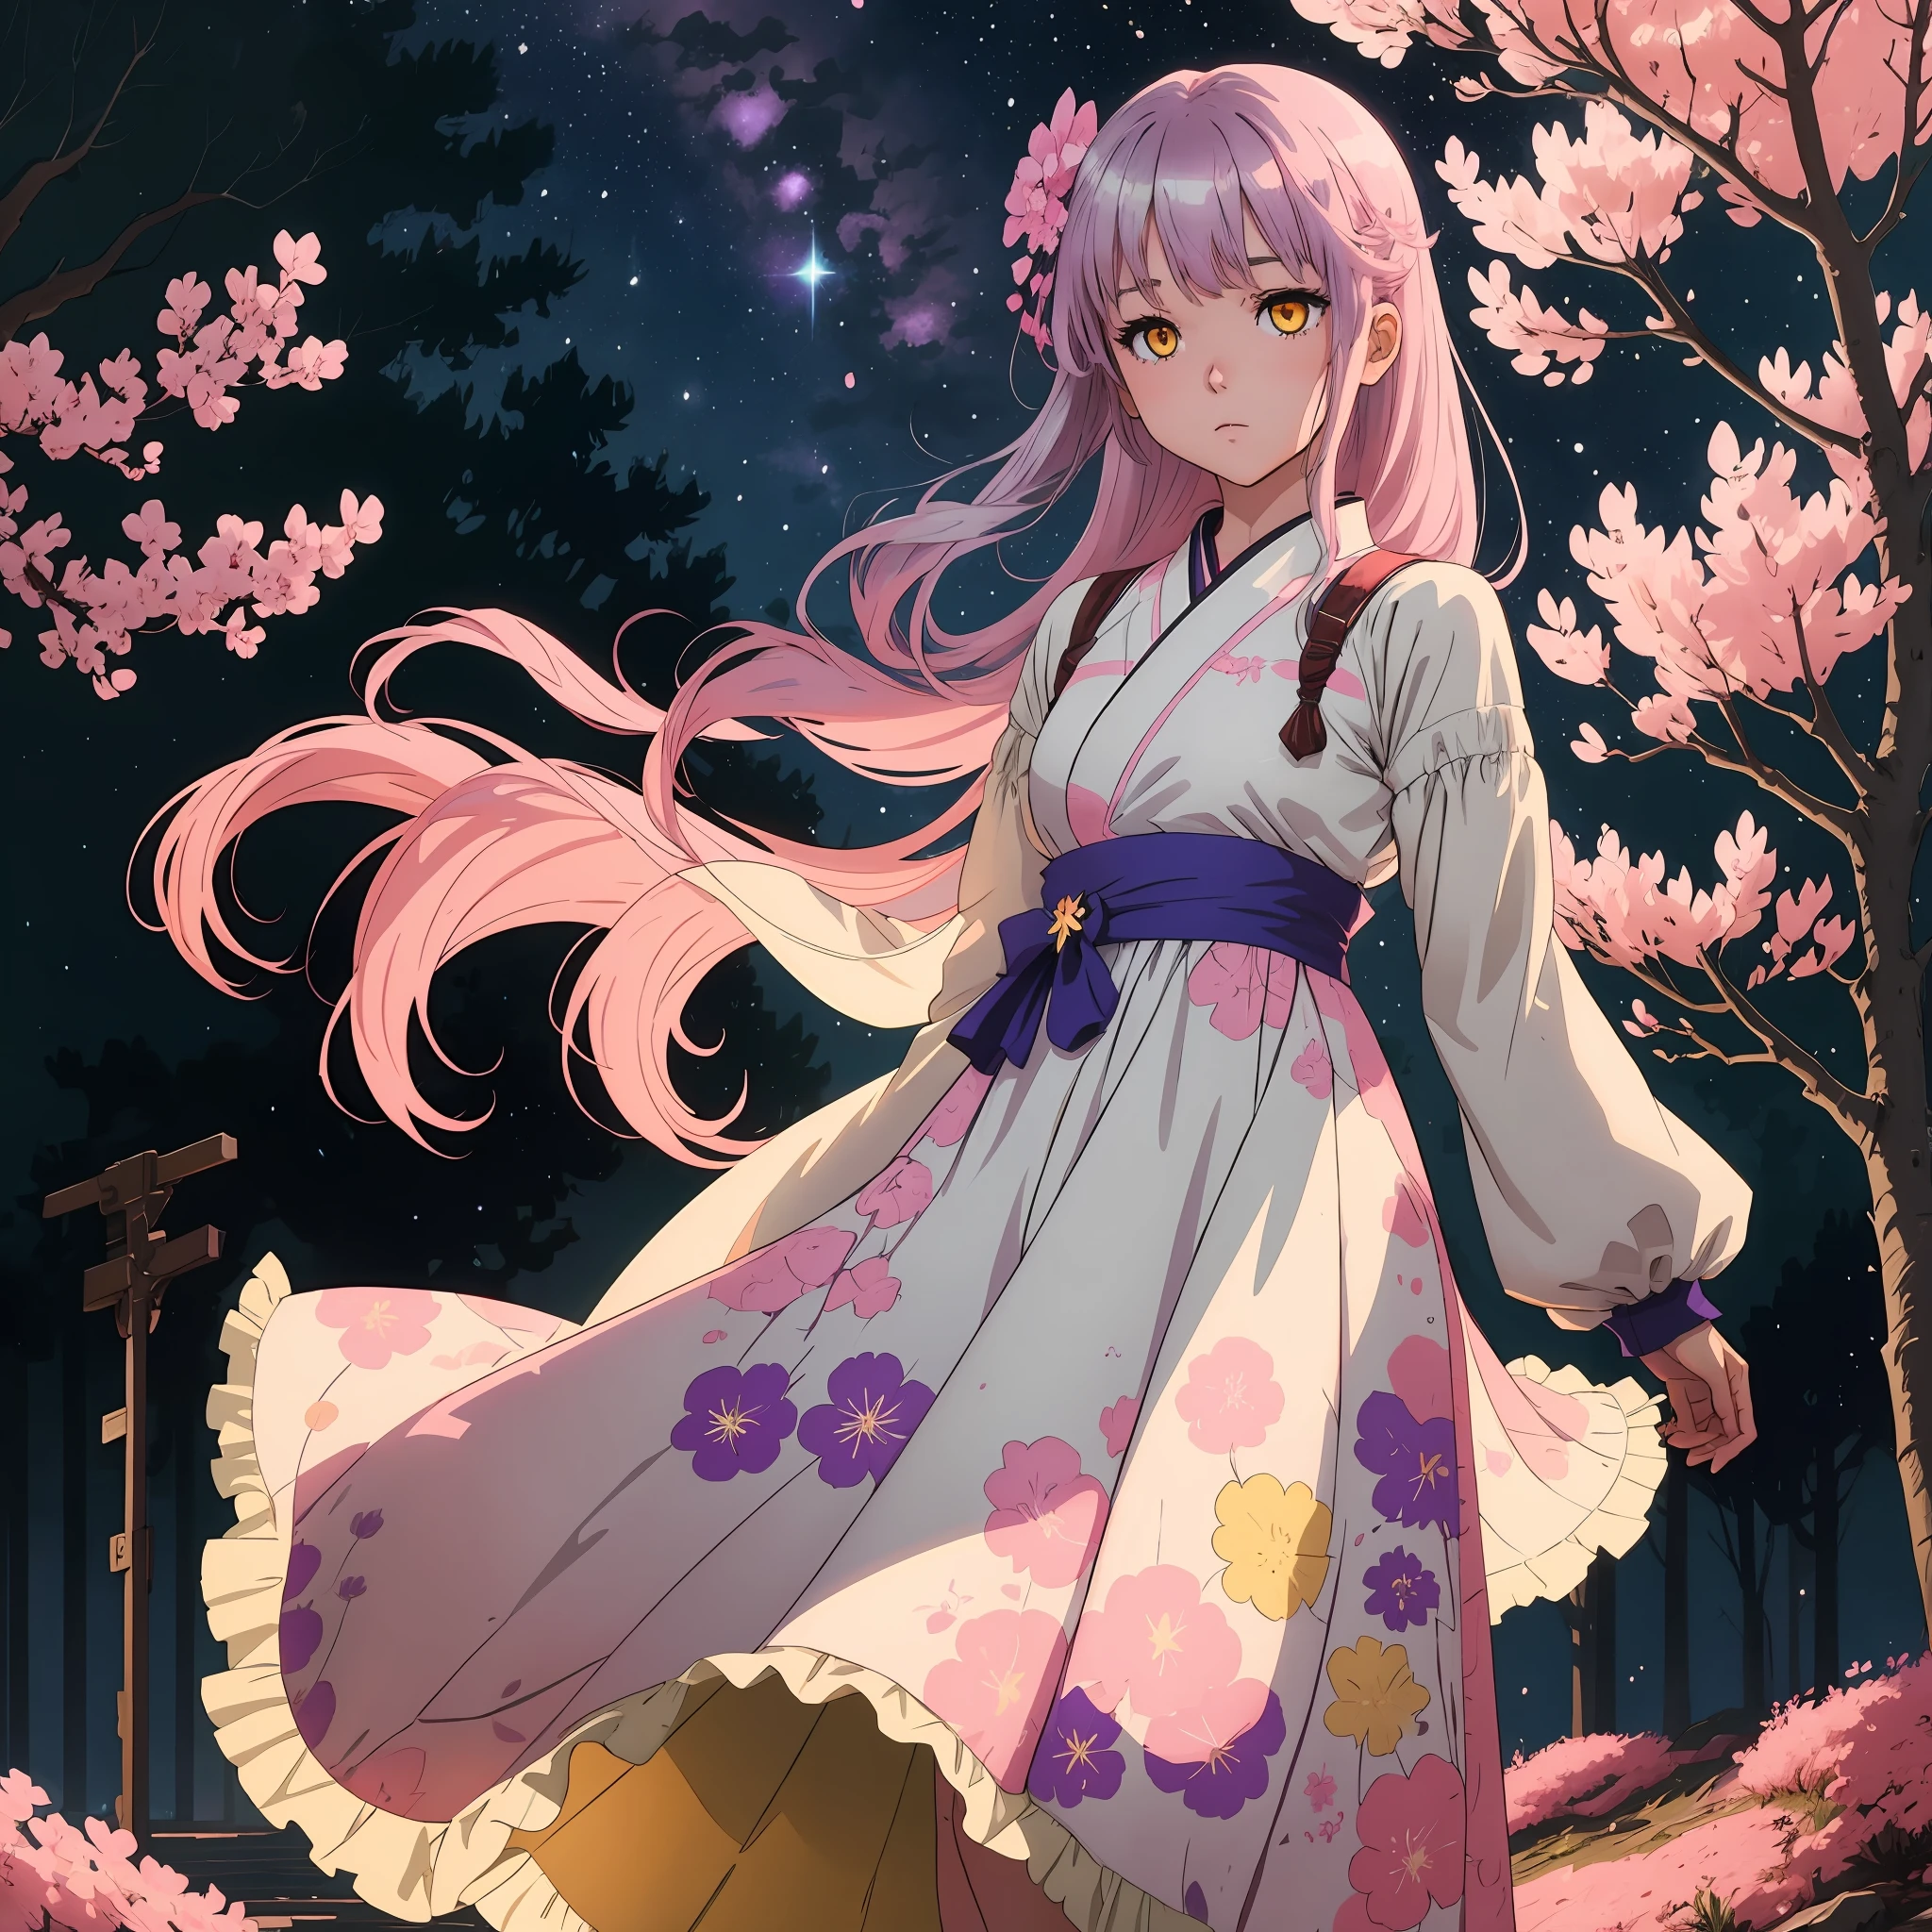 一個銀色頭髮的平面動漫女孩，有著明亮的黃色眼睛和粉紅色的櫻花，她的頭髮穿著薰衣草蓬鬆的薄紗連身裙，獨自站在星空下，周圍環繞著櫻花樹